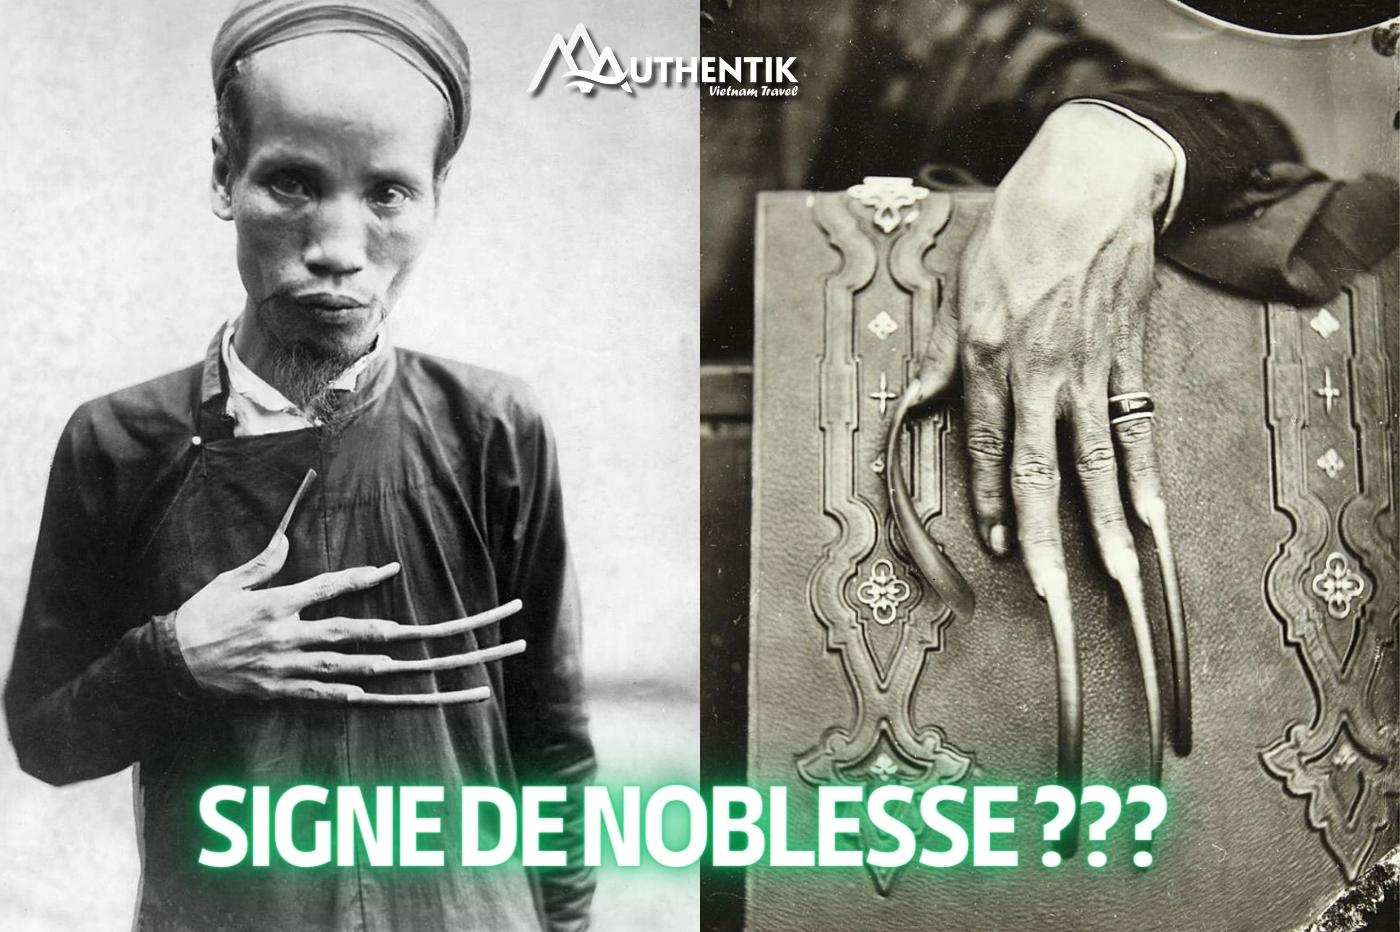  Pourquoi les hommes vietnamiens avaient des ongles très longs ? 